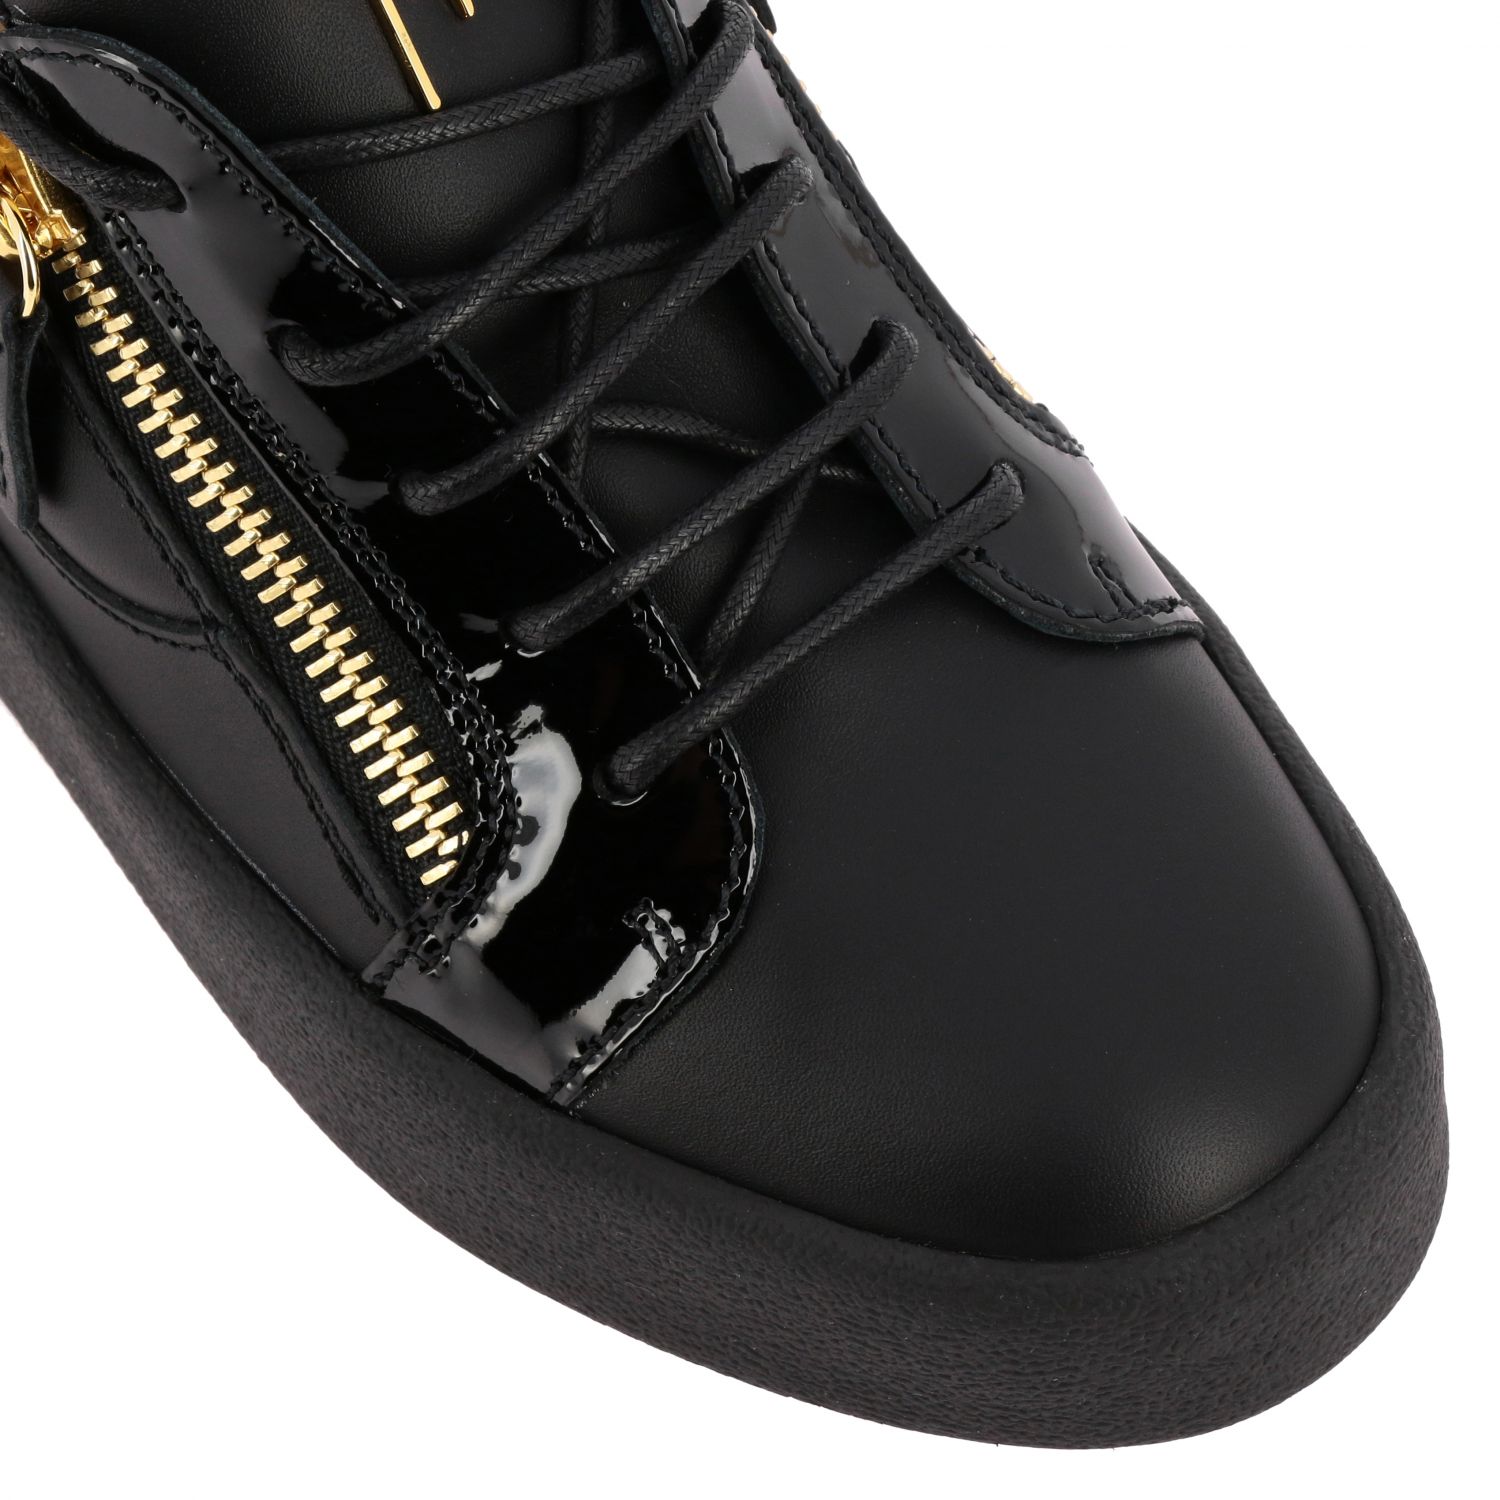 Giuseppe Zanotti Design Outlet: Sneakers Giuseppe Zanotti Design Women Black | Sneakers Zanotti Design RW70001 GIGLIO.COM